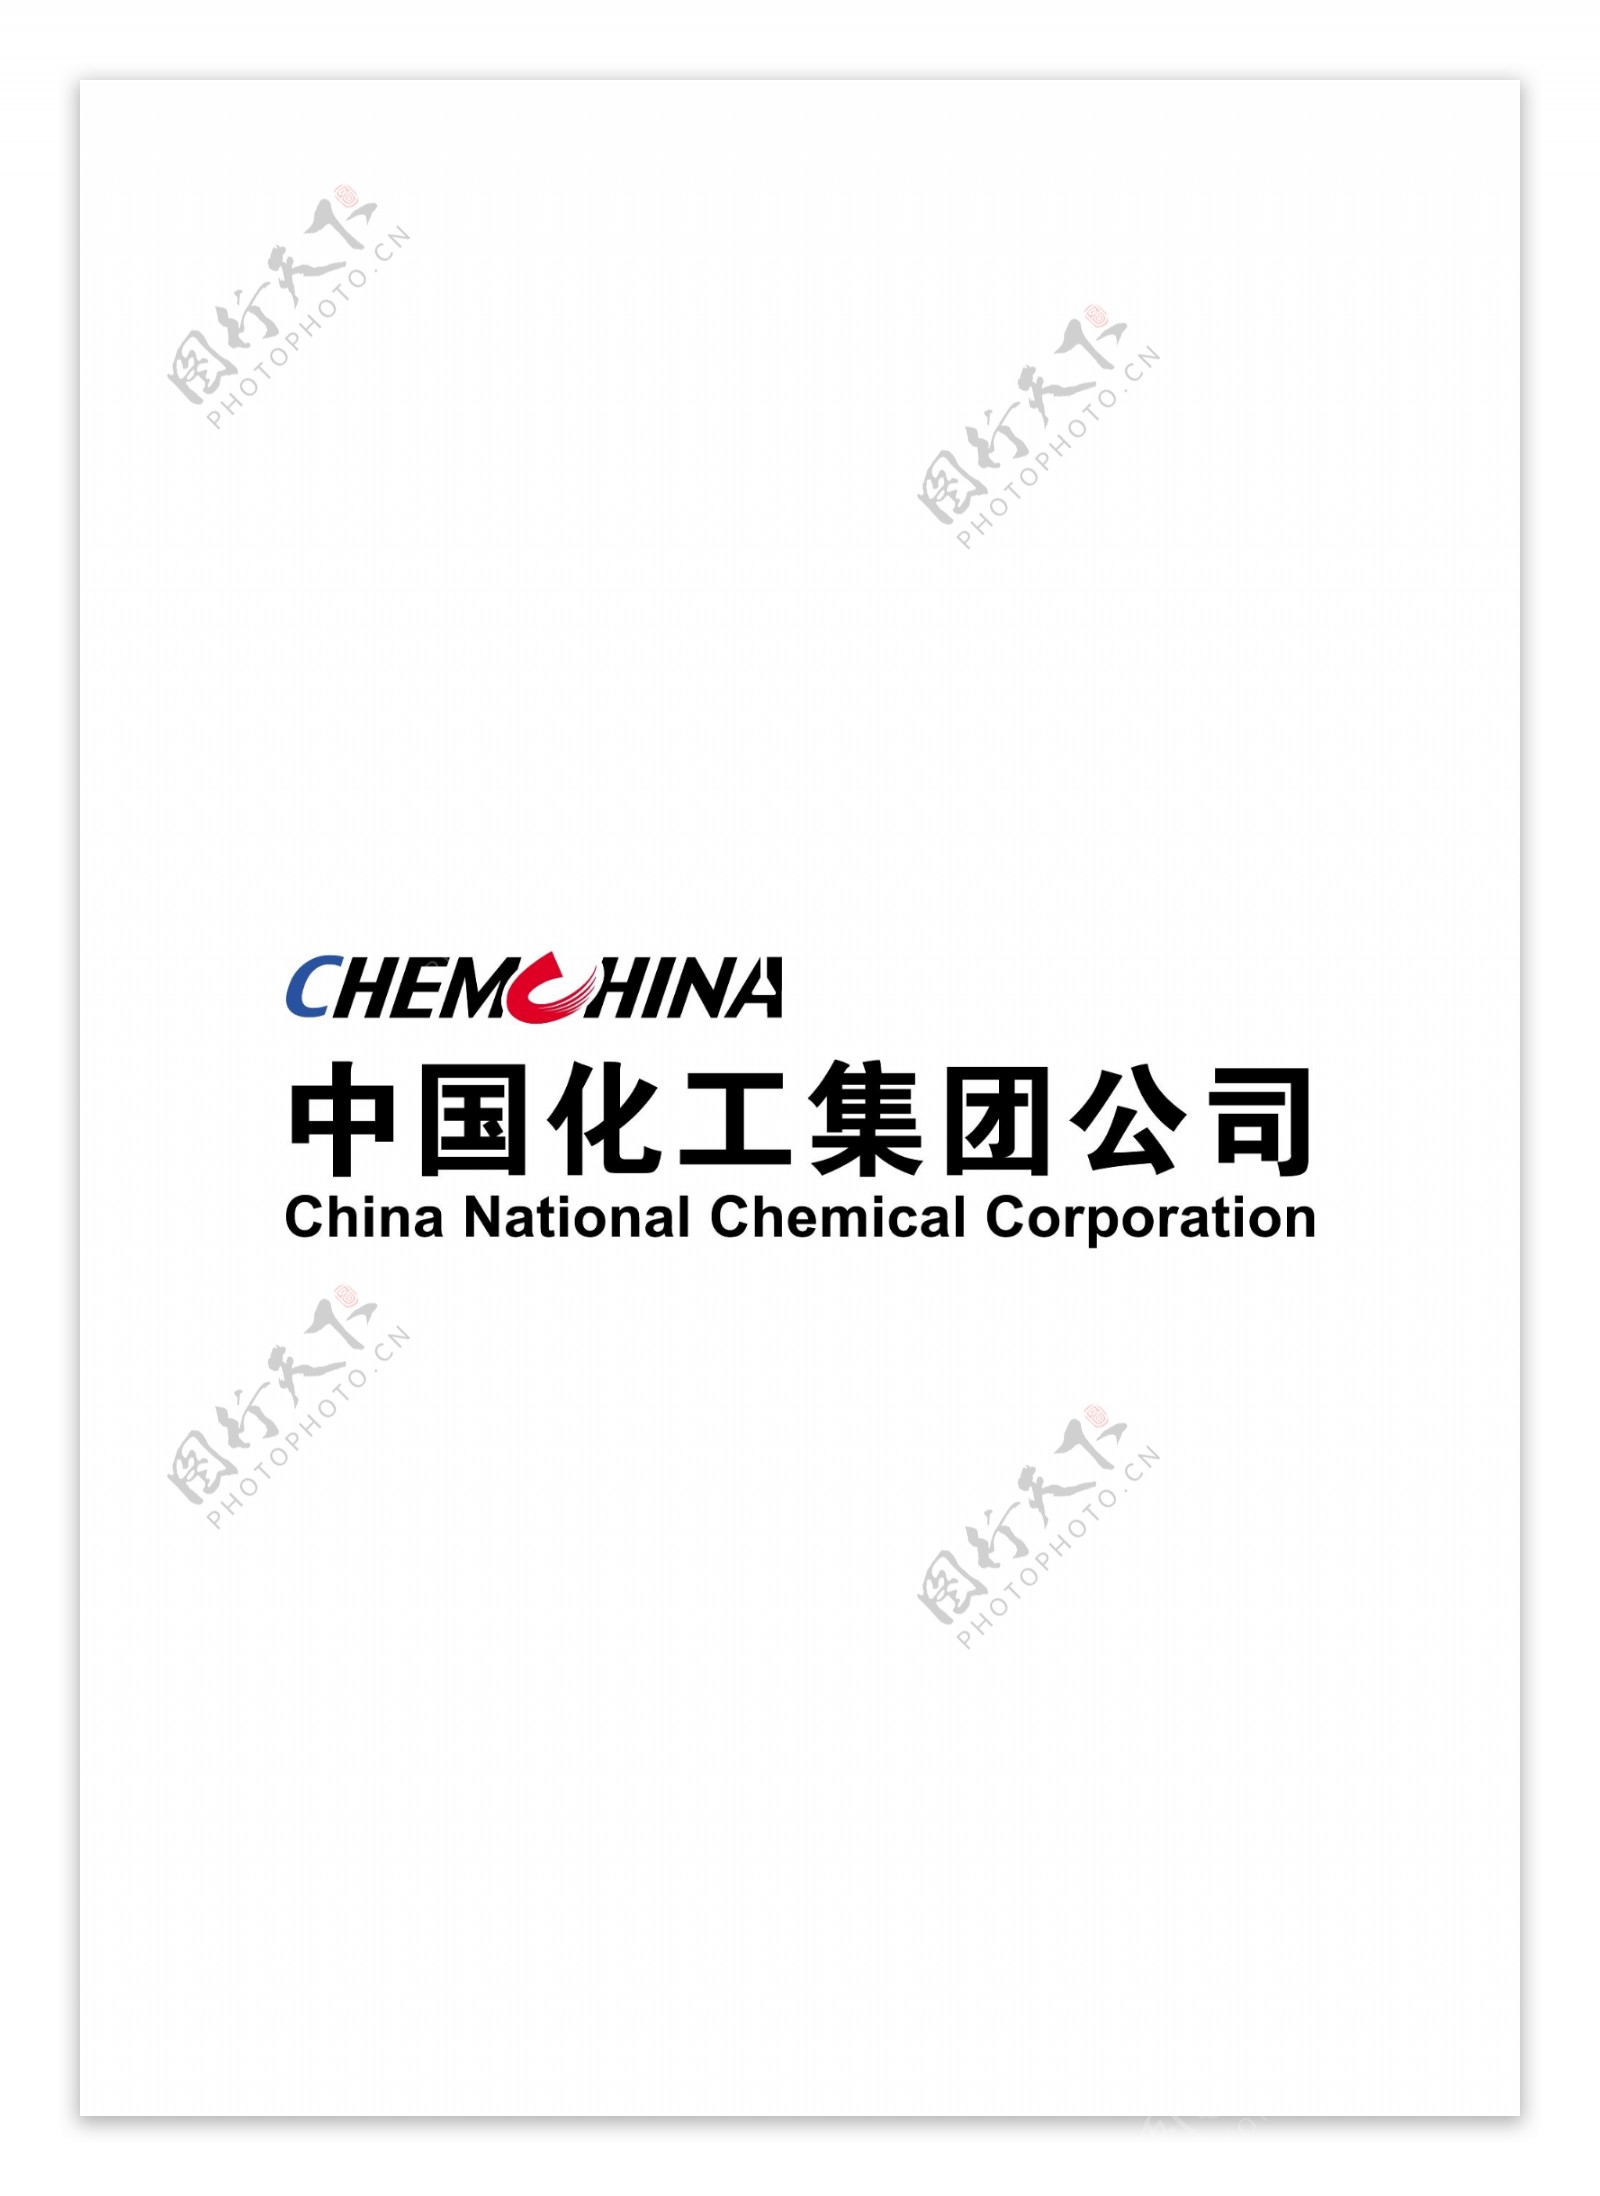 中国化工集团公司标志